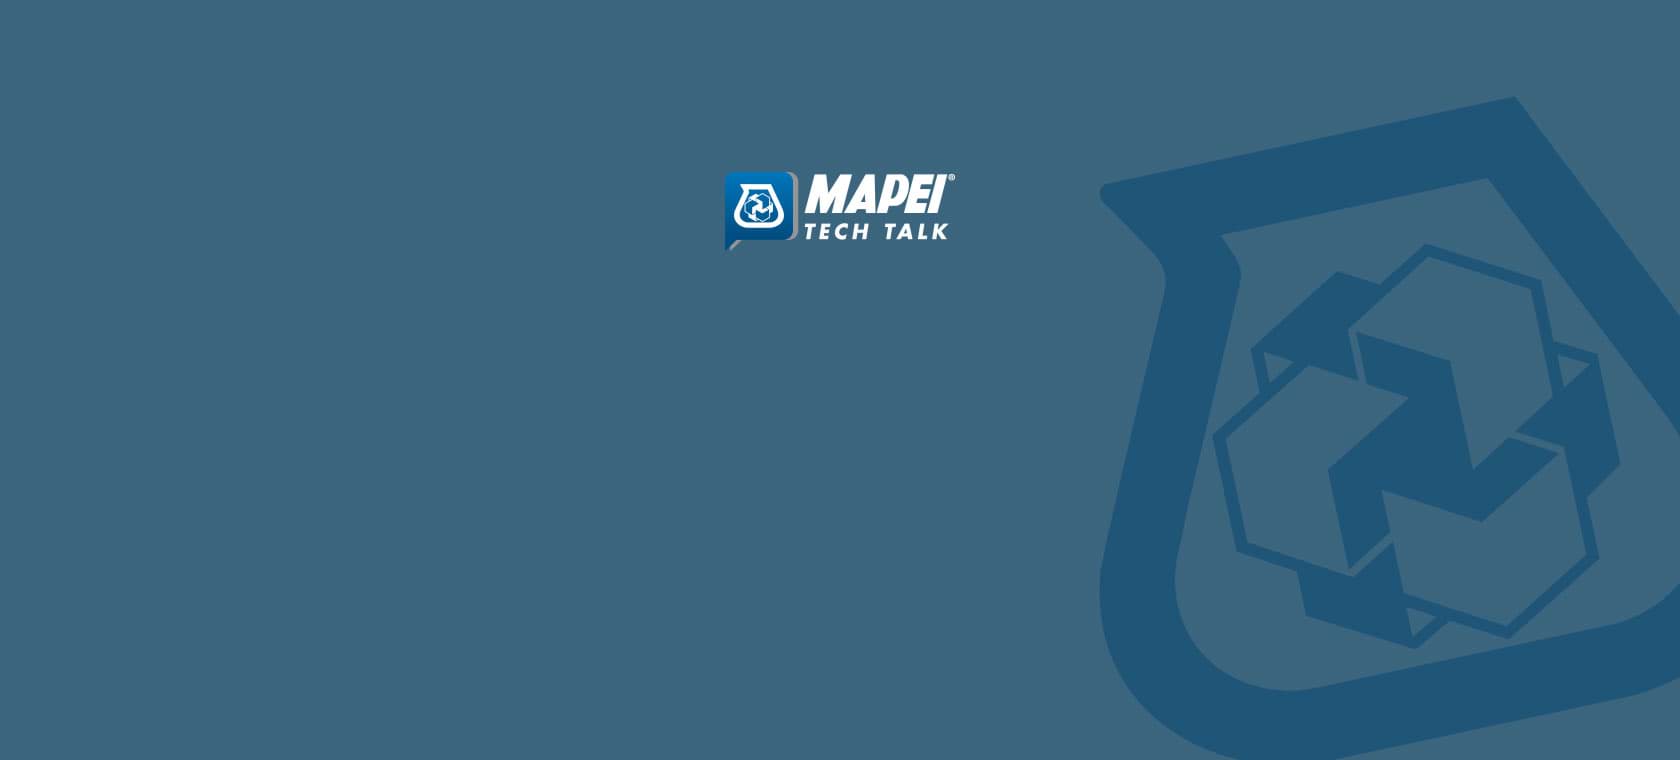 tech-talk-banner